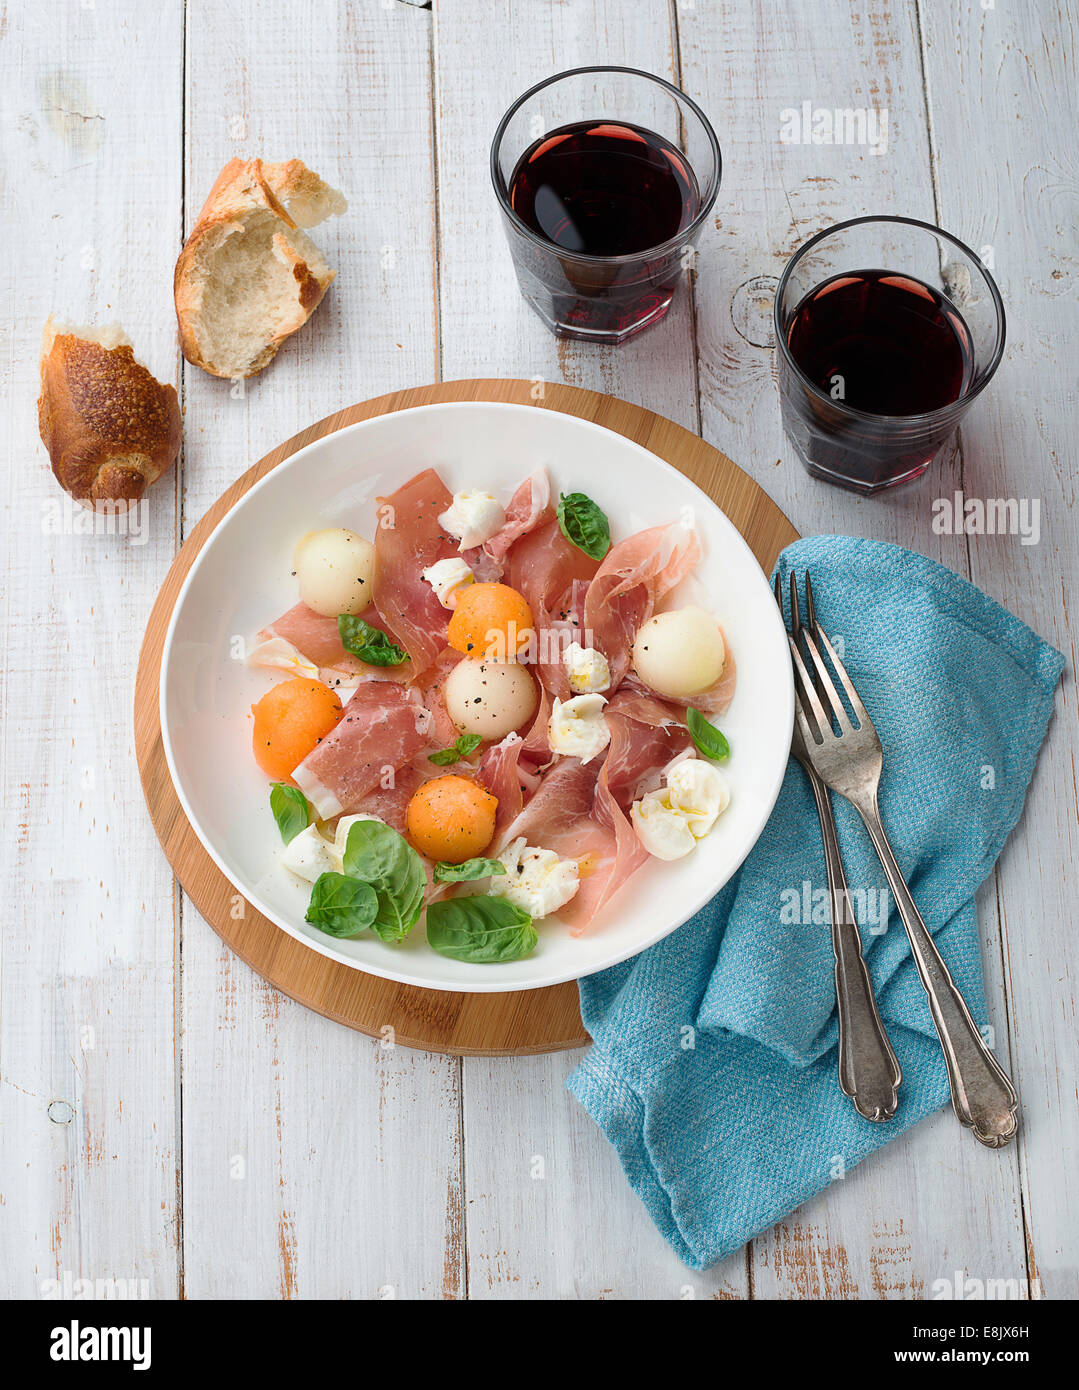 Melon and prosciutto ham salad with Mozzarella Stock Photo